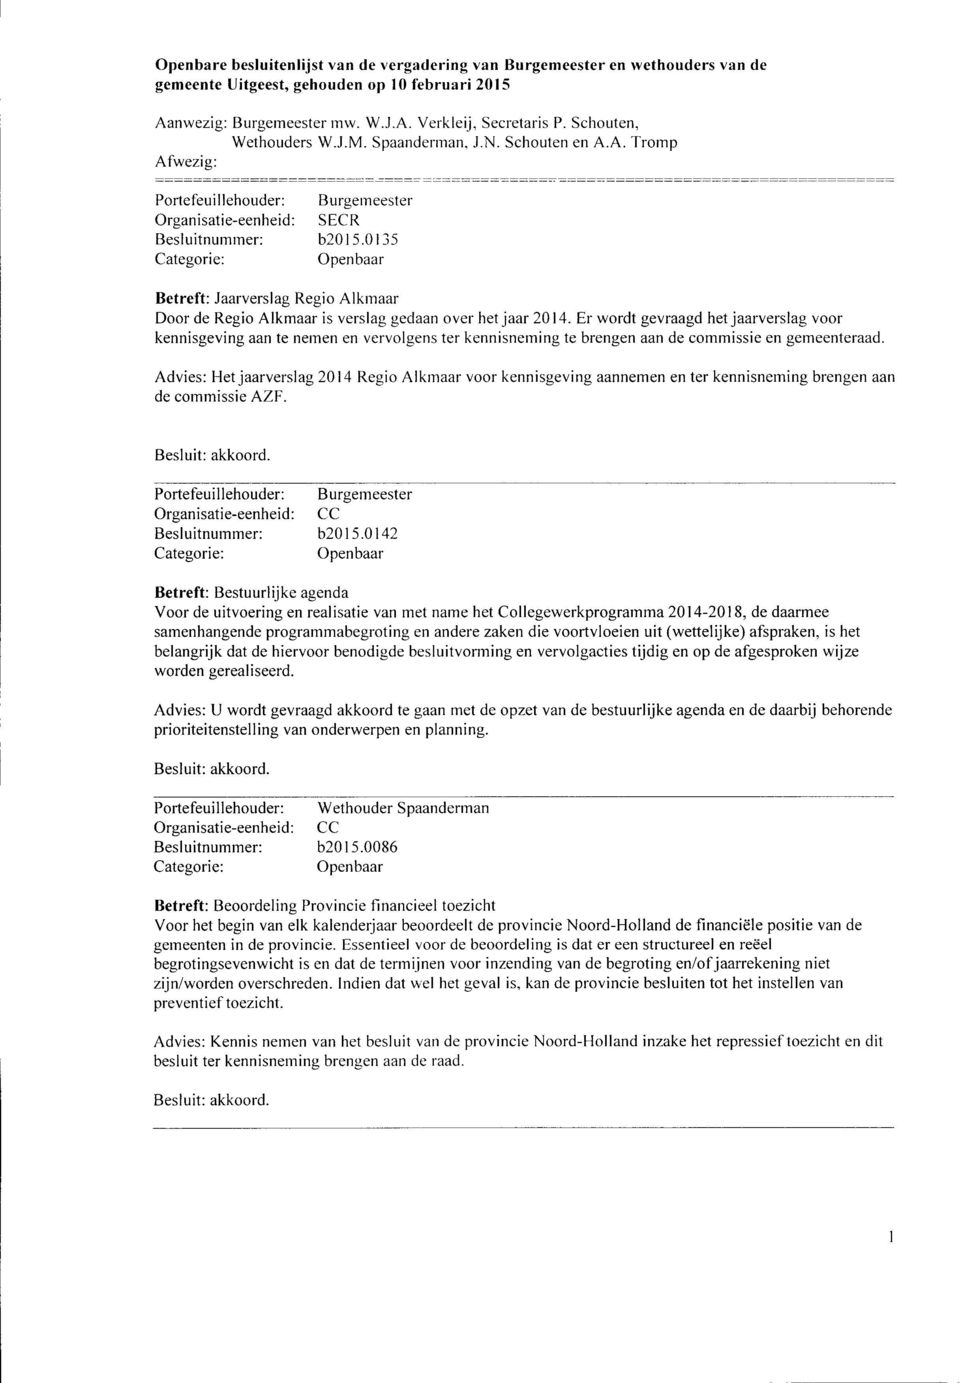 Advies: Het jaarverslag 2014 Regio Alkmaar voor kennisgeving aannemen en ter kennisneming brengen aan de commissie AZF. Portefeuillehouder: Burgemeester Besluitnummer: b2015.